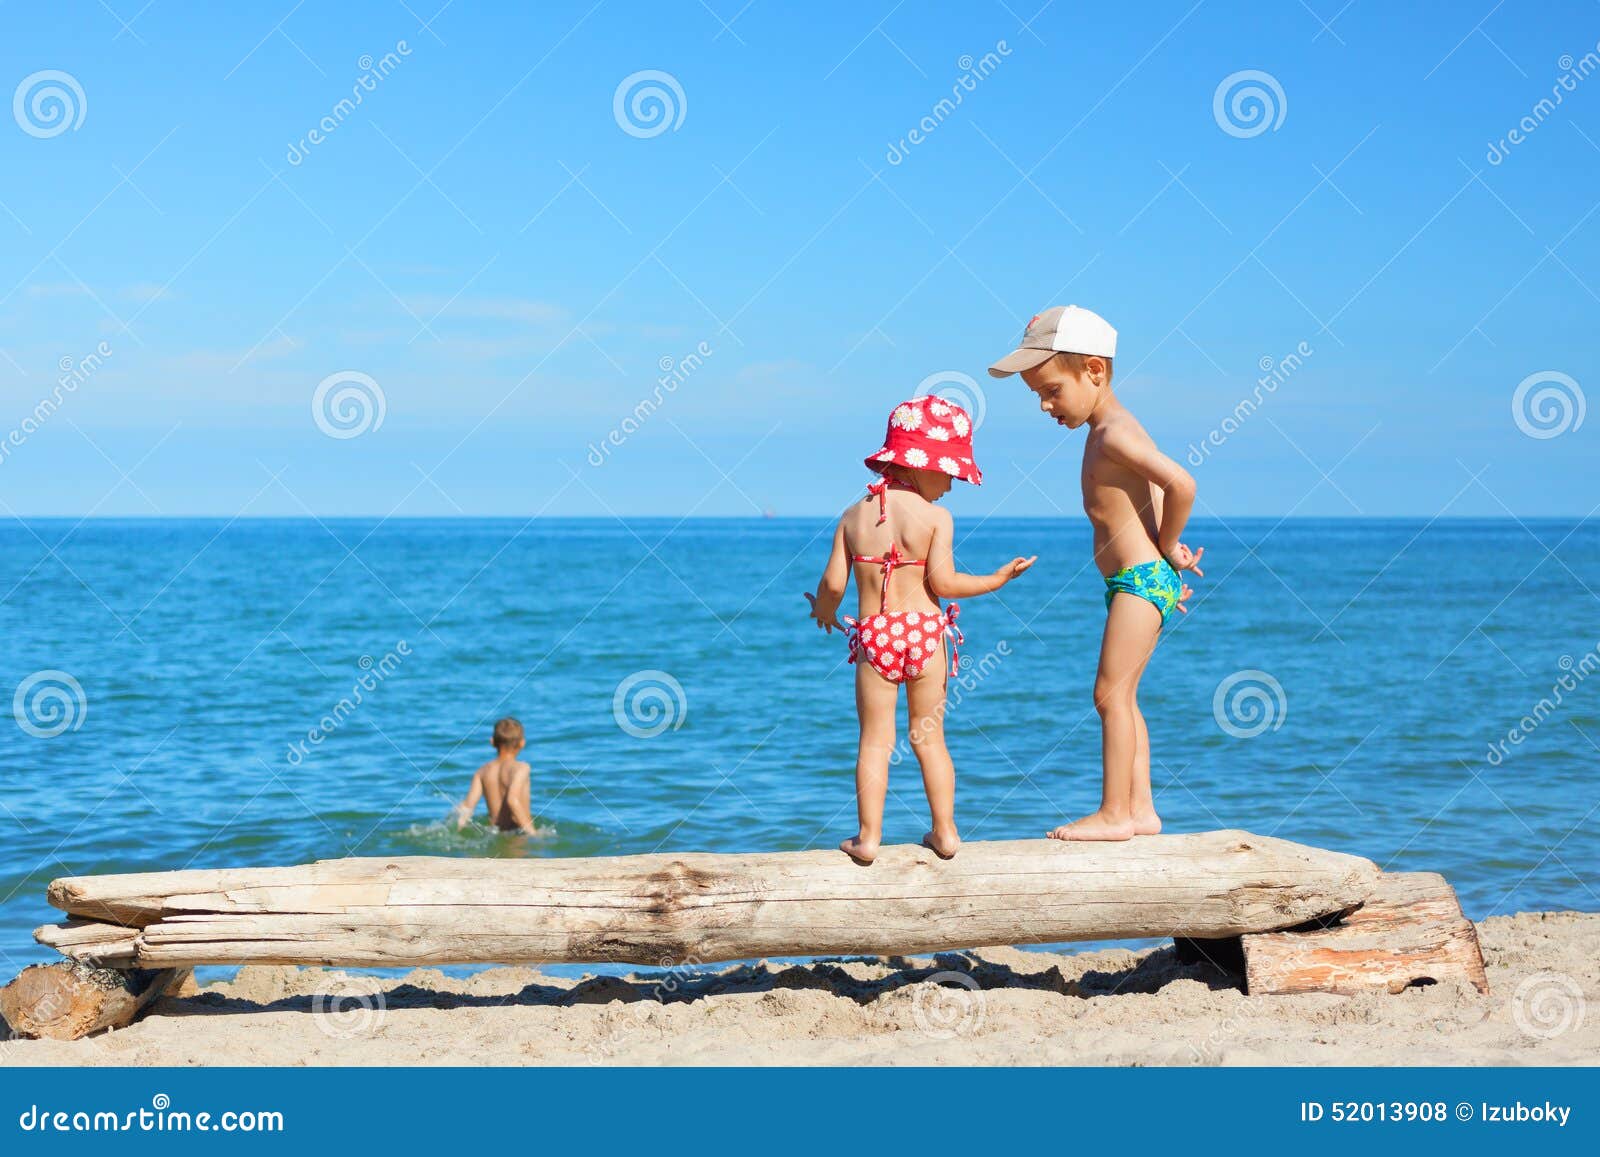 нудистский пляж с голыми детьми фото 15